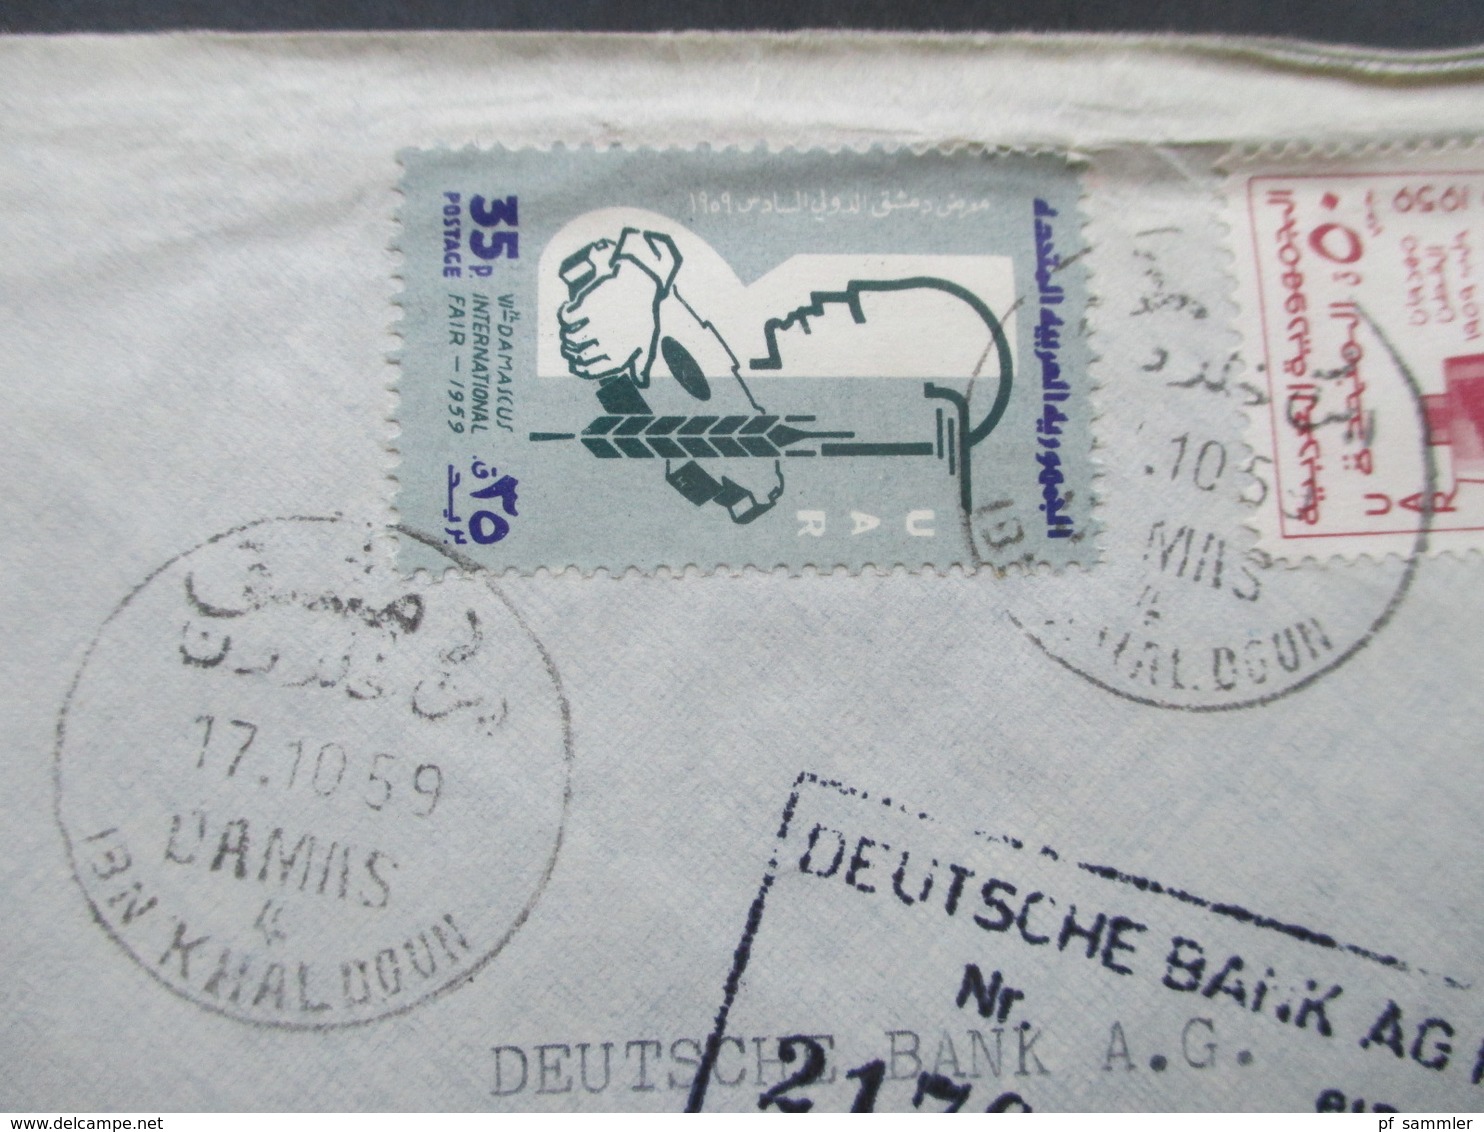 Syrien / UAR 1959 Air Mail / Luftpost Societe De Banques Reunies S.A.S. Einschreiben R No 827 / Arabische Schrift - Siria